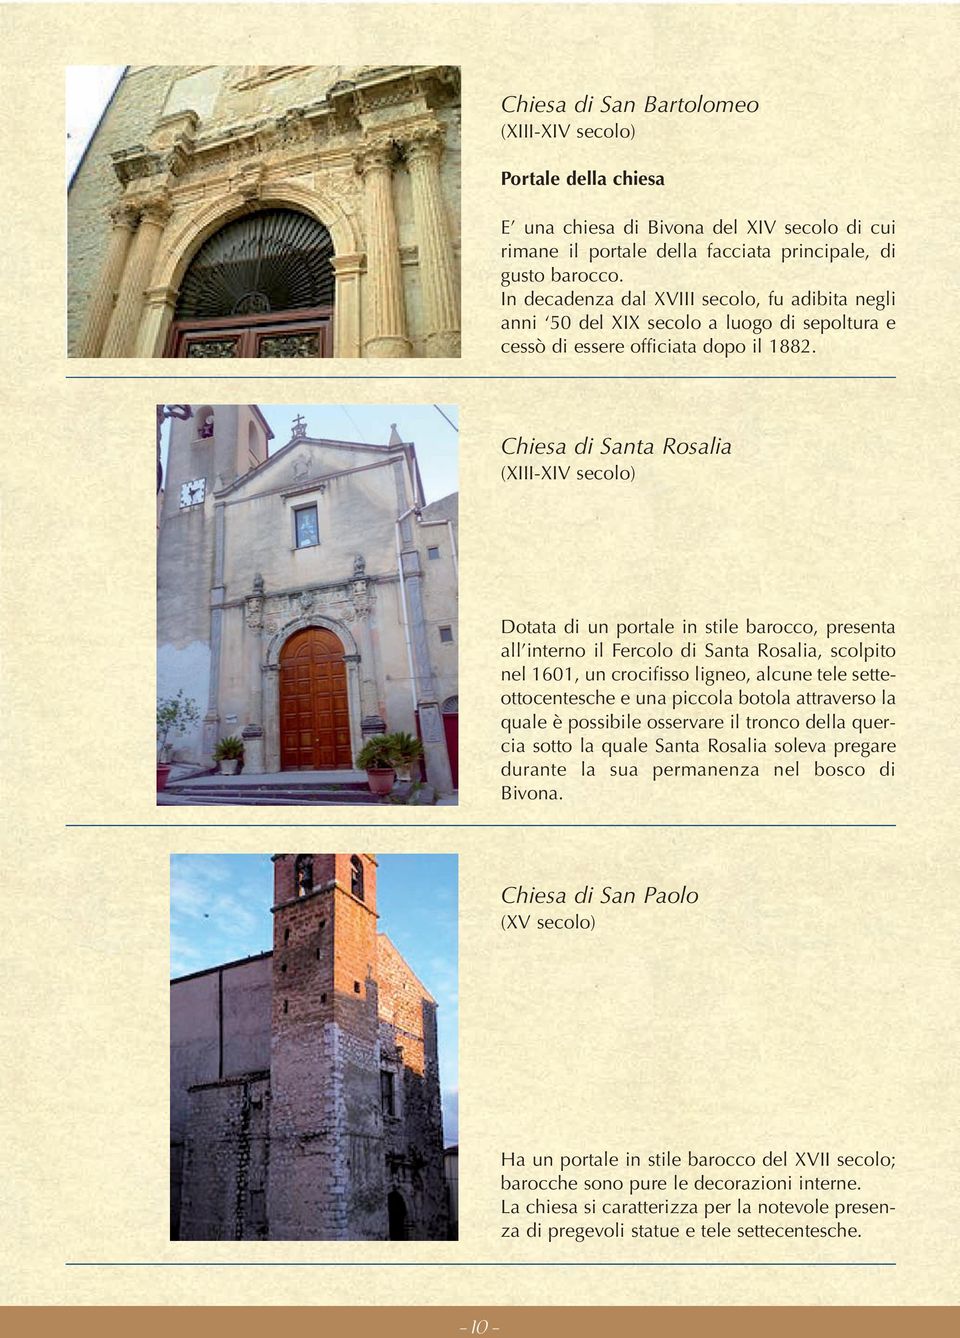 Chiesa di Santa Rosalia (XIII-XIV secolo) Dotata di un portale in stile barocco, presenta all interno il Fercolo di Santa Rosalia, scolpito nel 1601, un crocifisso ligneo, alcune tele